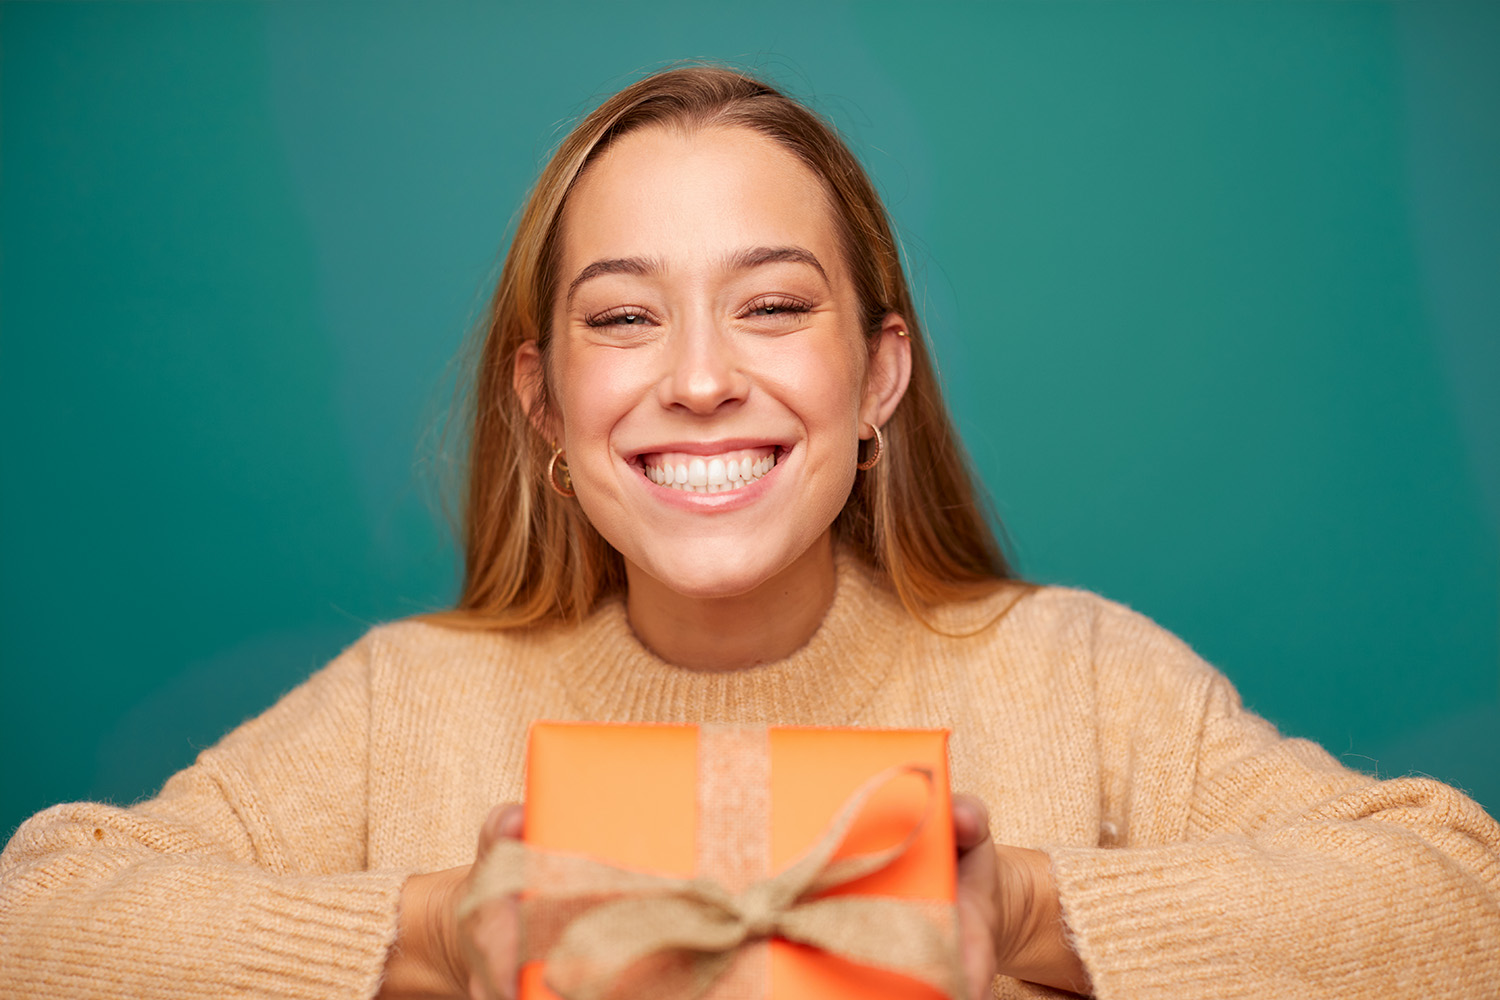 leende flicka med orange tröja som håller en orange presentförpackning